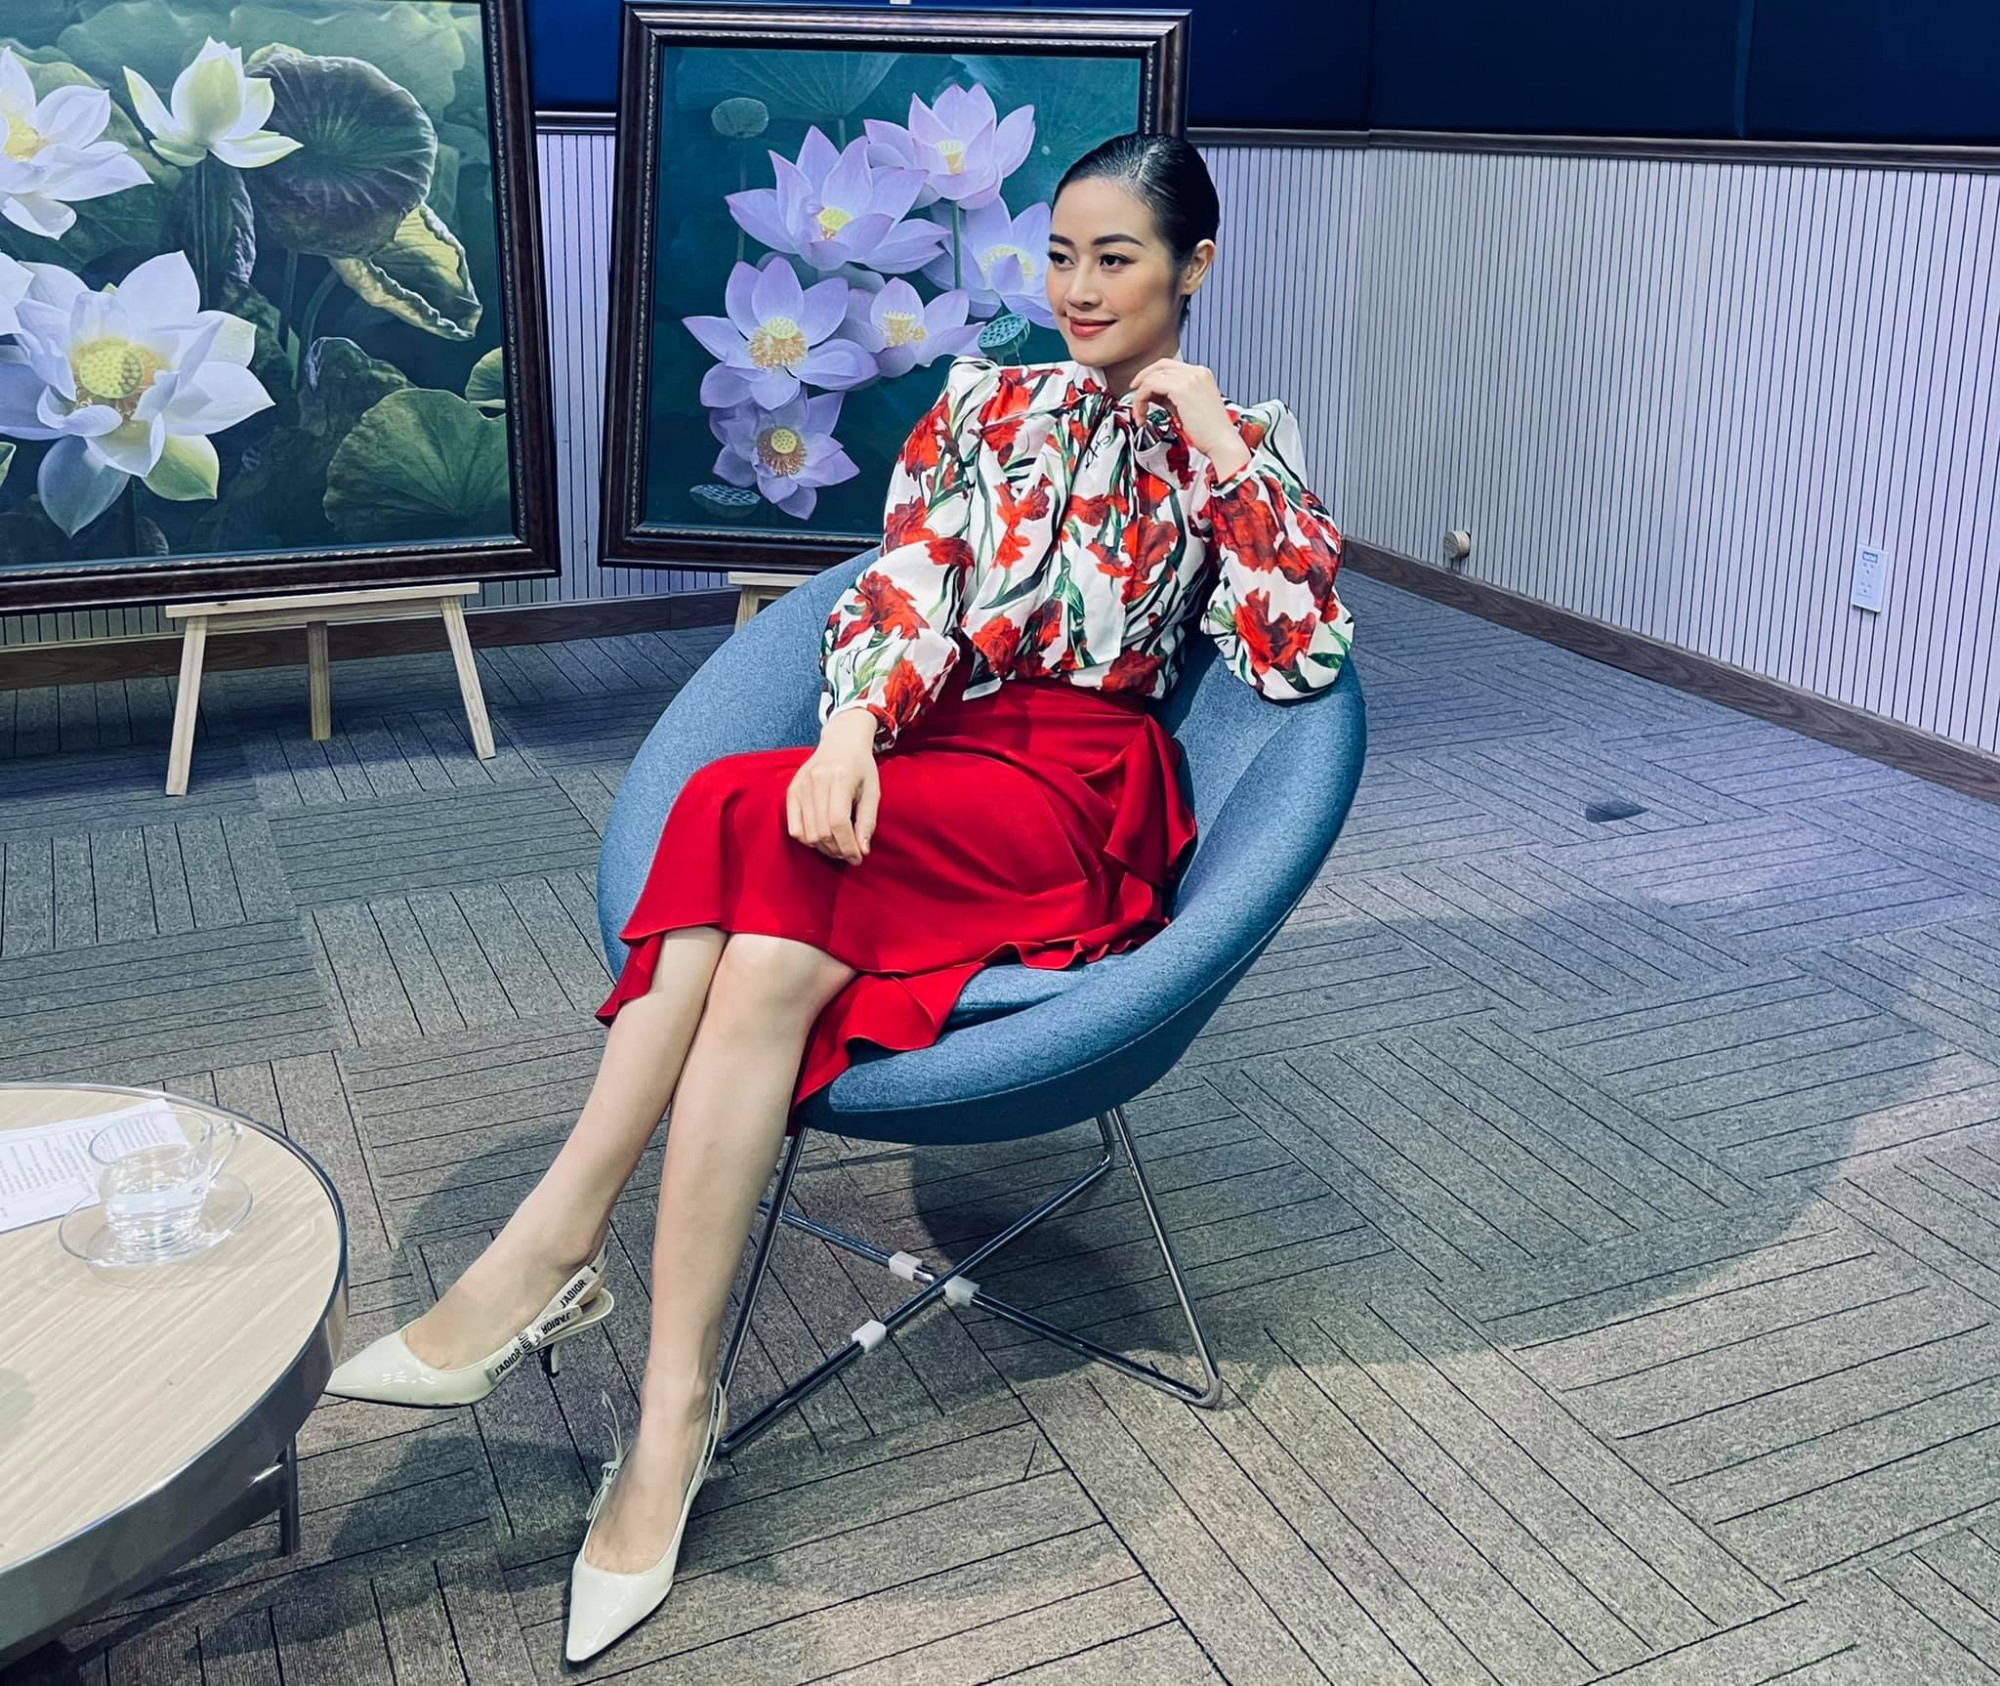 Trong các chương trình truyền hình, Phí Linh thường xuất hiện với đầm, áo sơ mi phối chân váy thanh lịch, sang trọng. 